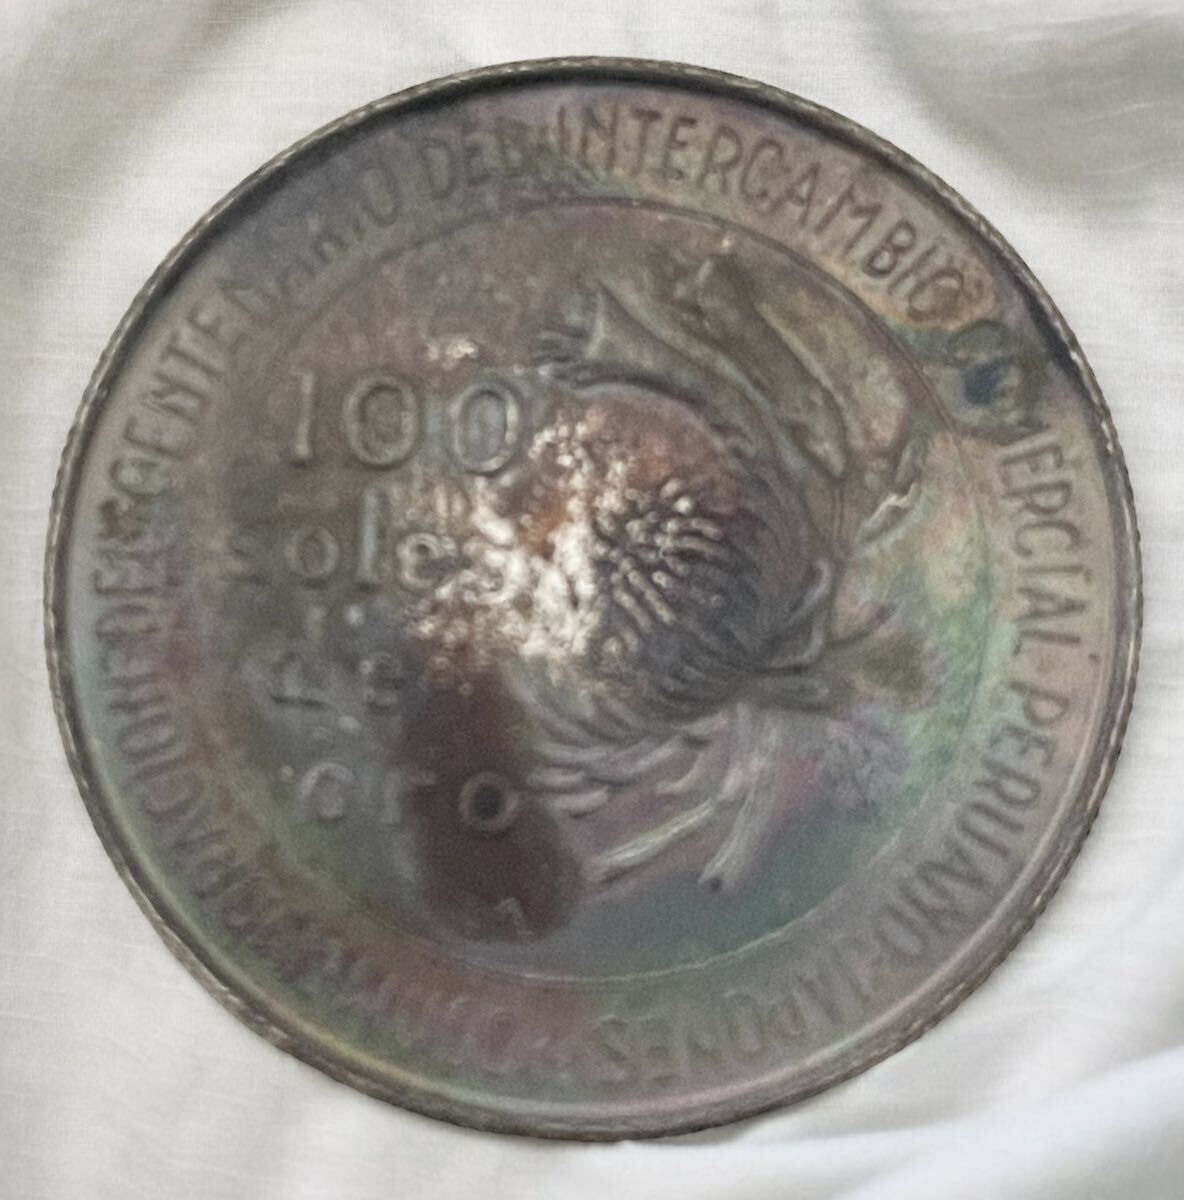 ペルー 100ソル銀貨 日本・ペルー修好100周年記念銀貨 1873-1973年 100soles de oro 外国銀貨 記念硬貨 21.67gの画像2